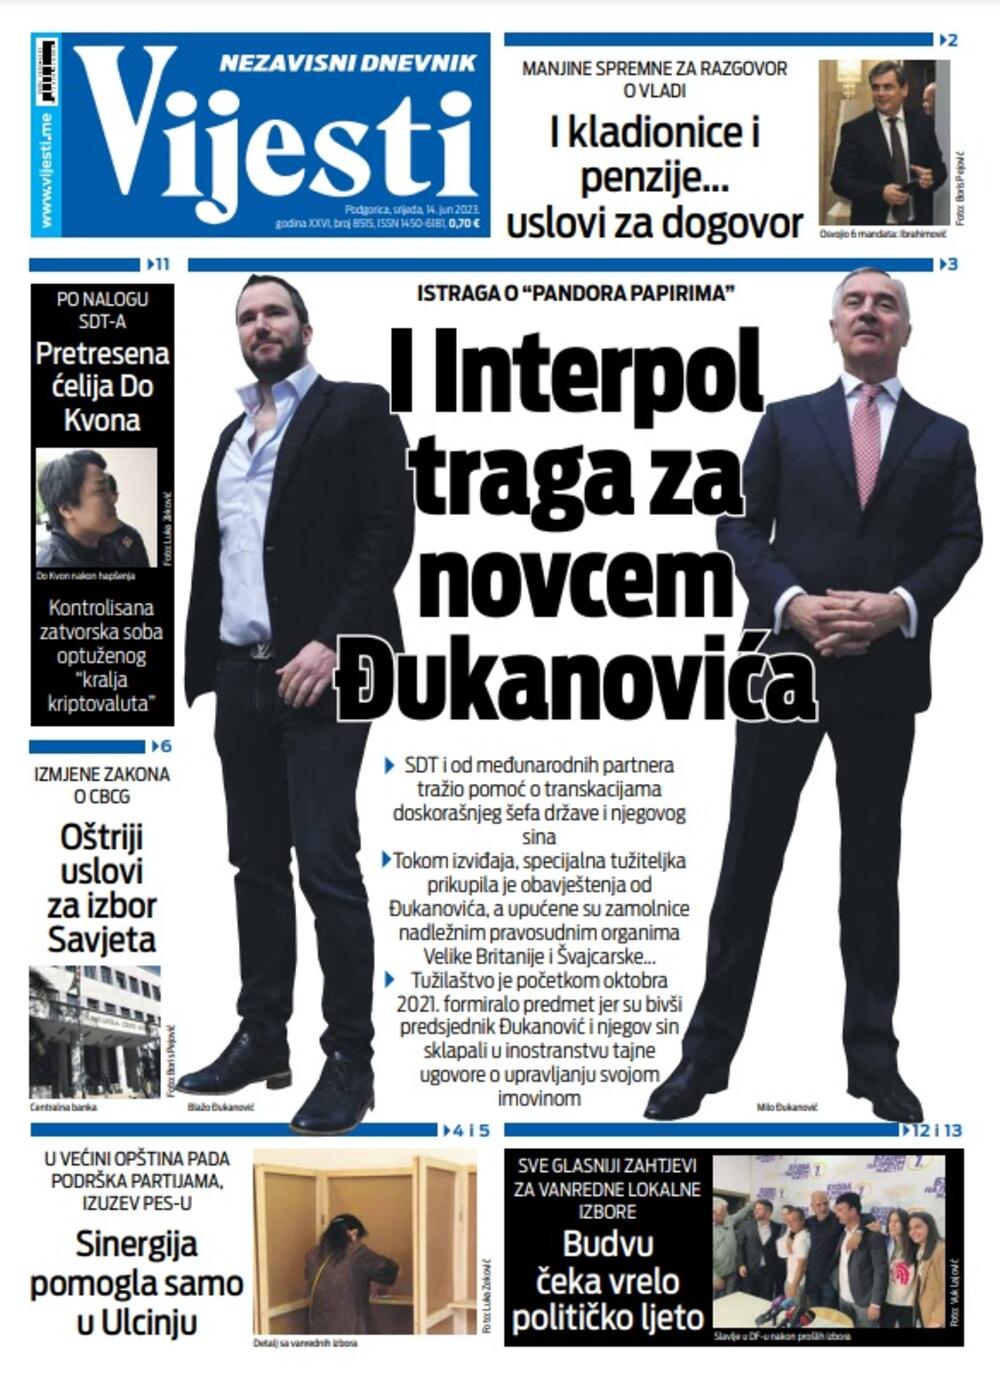 Naslovna strana "Vijesti" za 14. jun 2023. godine, Foto: Vijesti